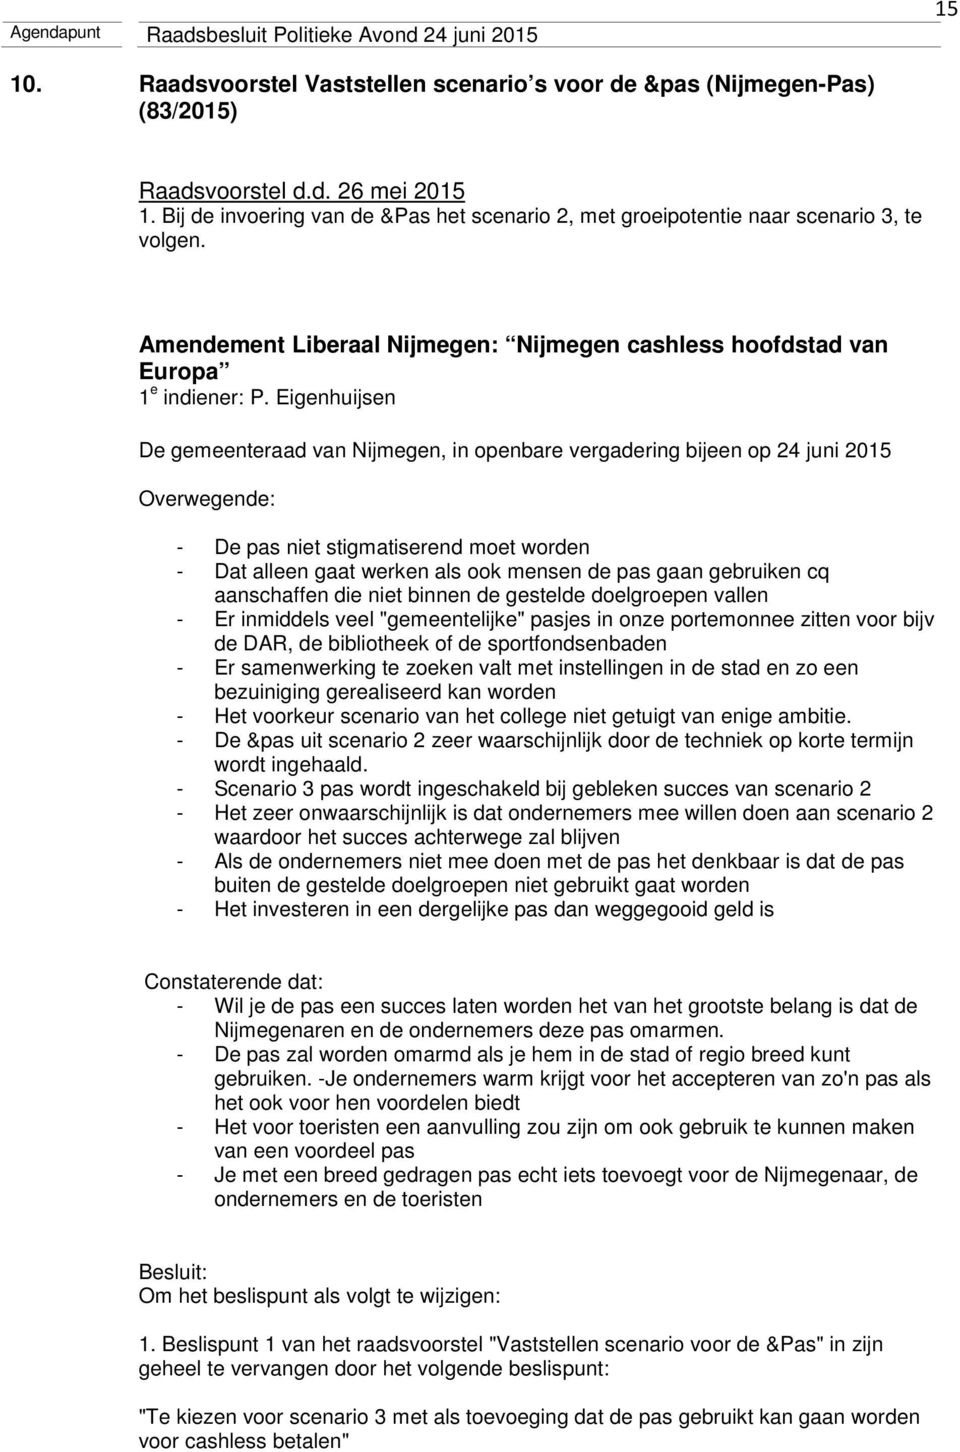 Eigenhuijsen De gemeenteraad van Nijmegen, in openbare vergadering bijeen op 24 juni 2015 Overwegende: - De pas niet stigmatiserend moet worden - Dat alleen gaat werken als ook mensen de pas gaan